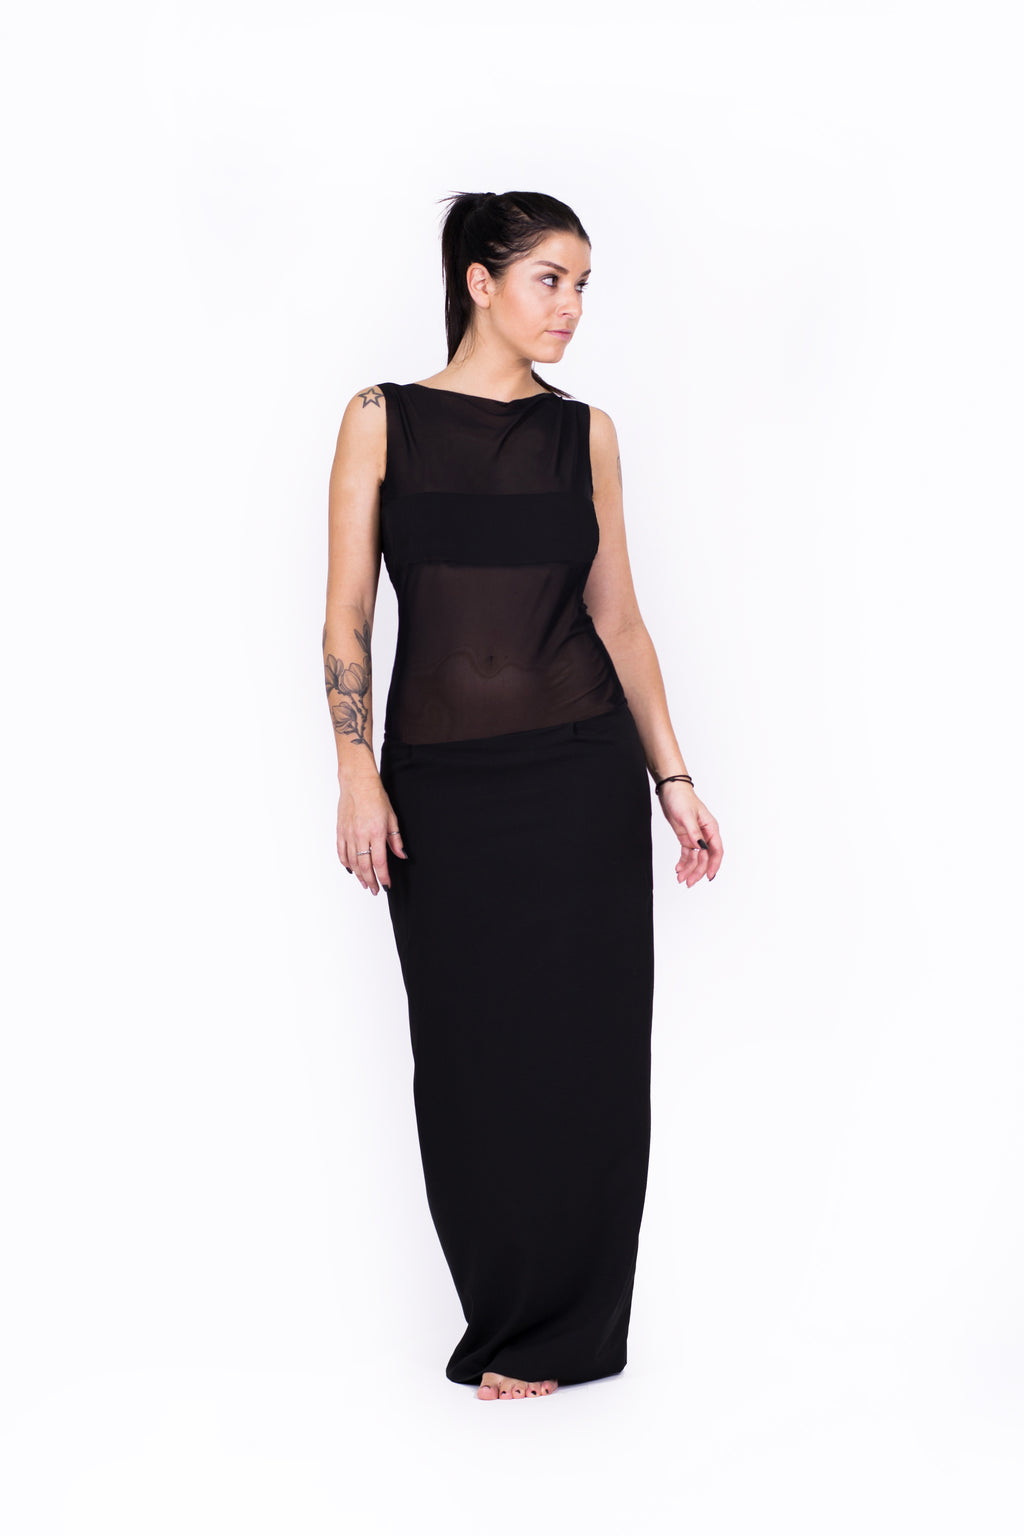 Maxi-Cocktailkleid mit Netz-Einsatz, halbtransparent, extravagant - Kleid - 7dresses